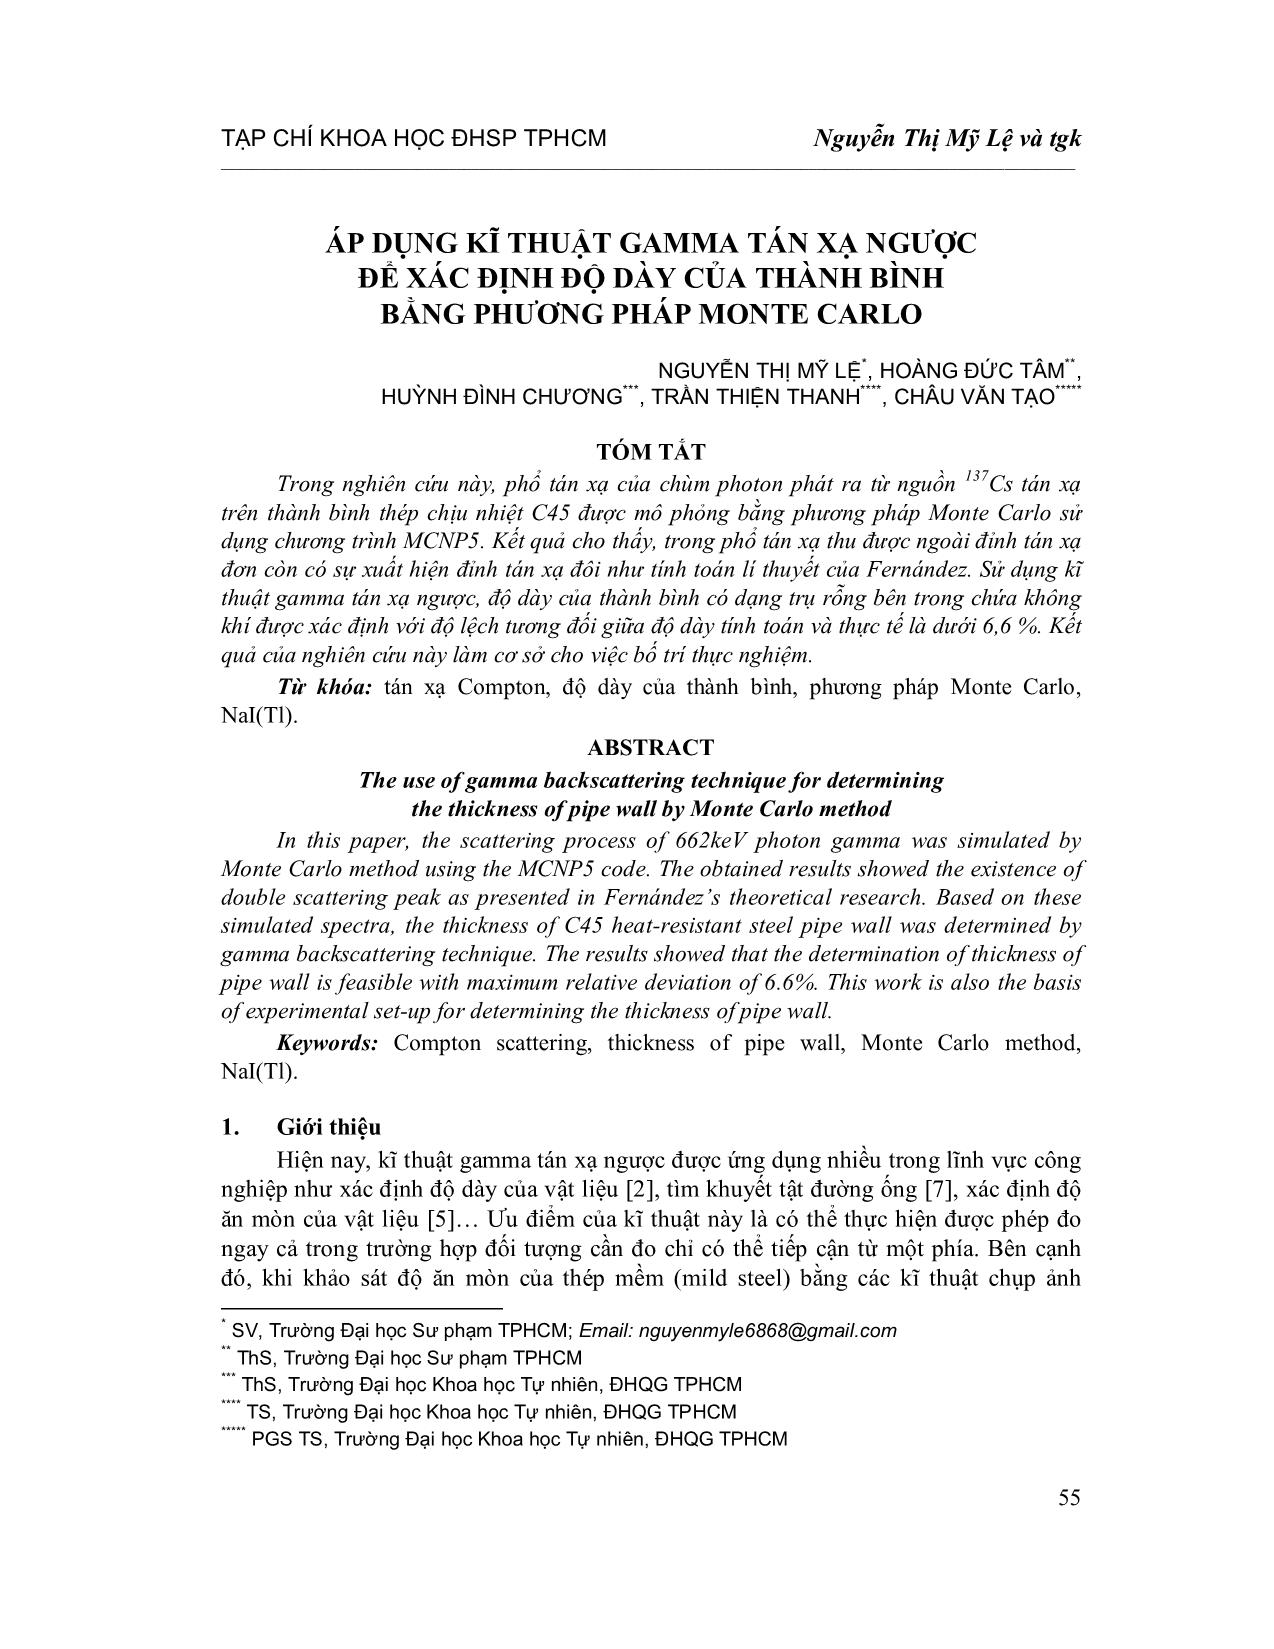 Áp dụng kĩ thuật Gamma tán xạ ngược để xác định độ dày của thành bình bằng phương pháp Monte Carlo trang 1